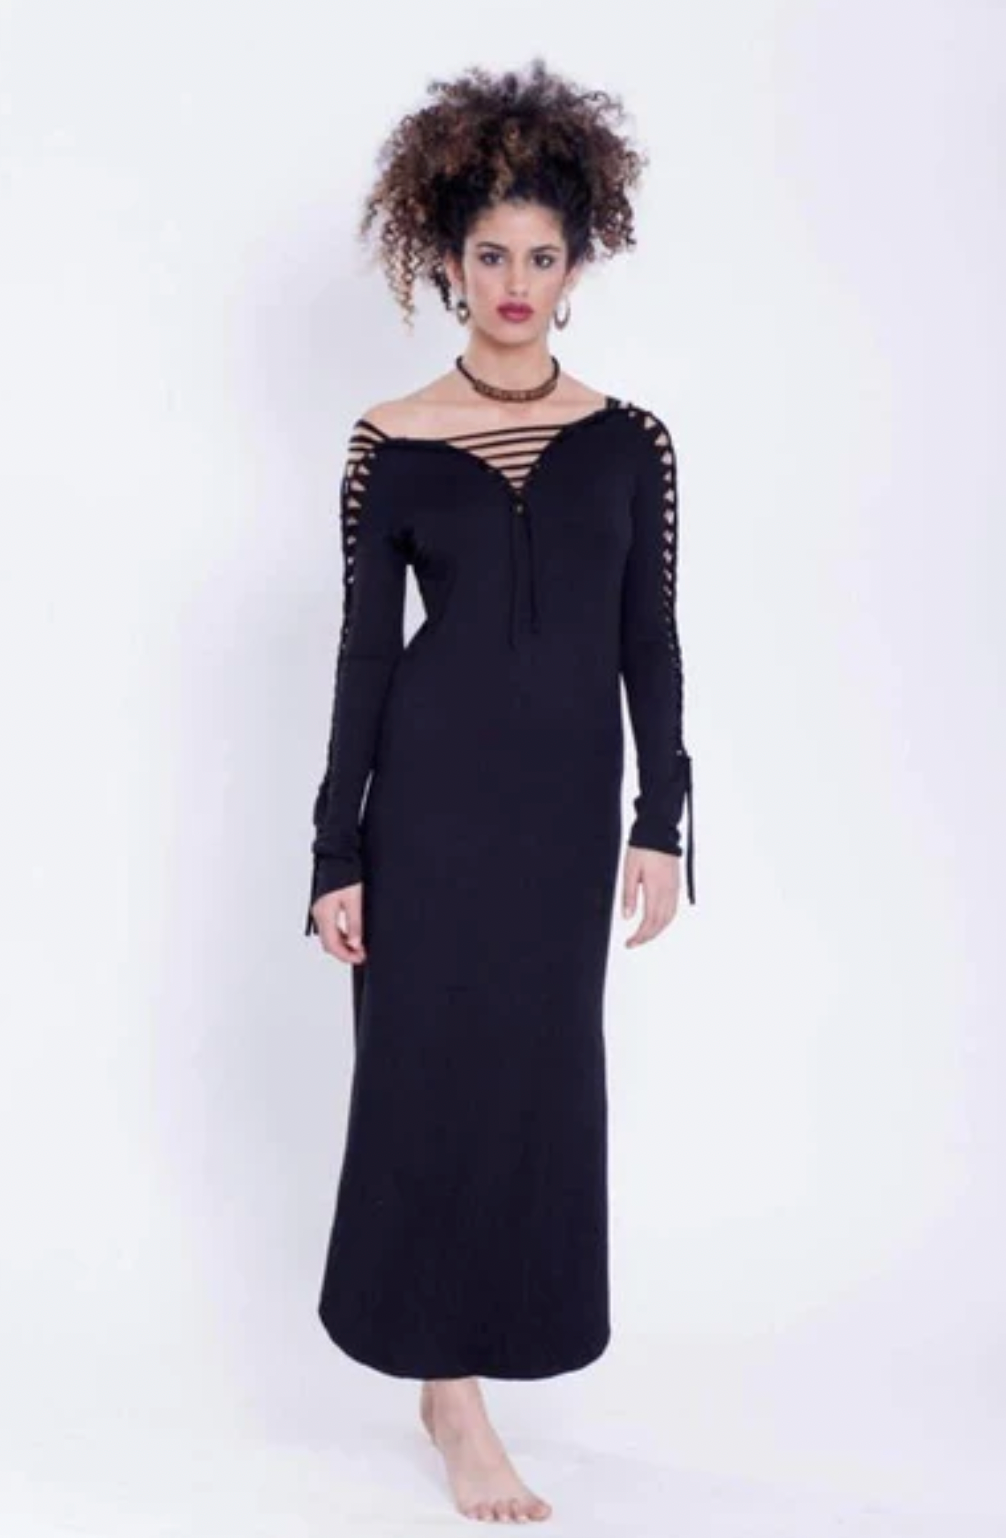 Long Sleeve Black Maxi Dress, Pixie Dress